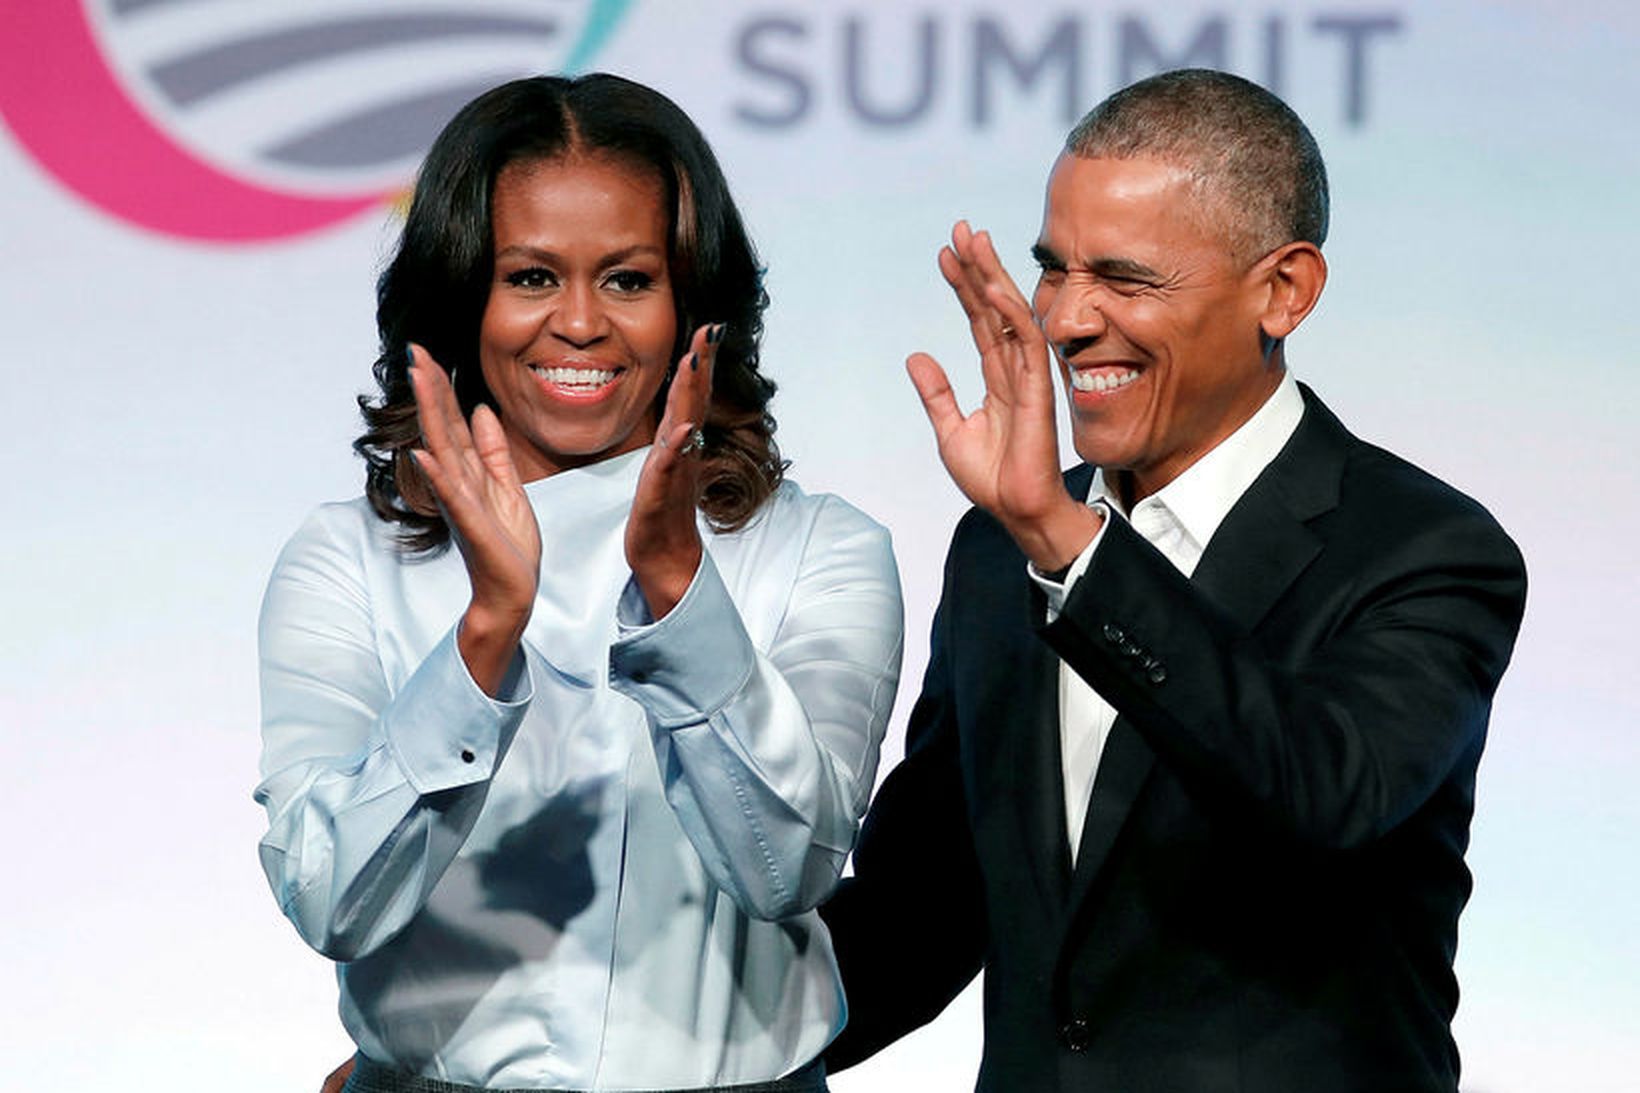 Michelle og Barack Obama áttu erfitt með að eignast börn.